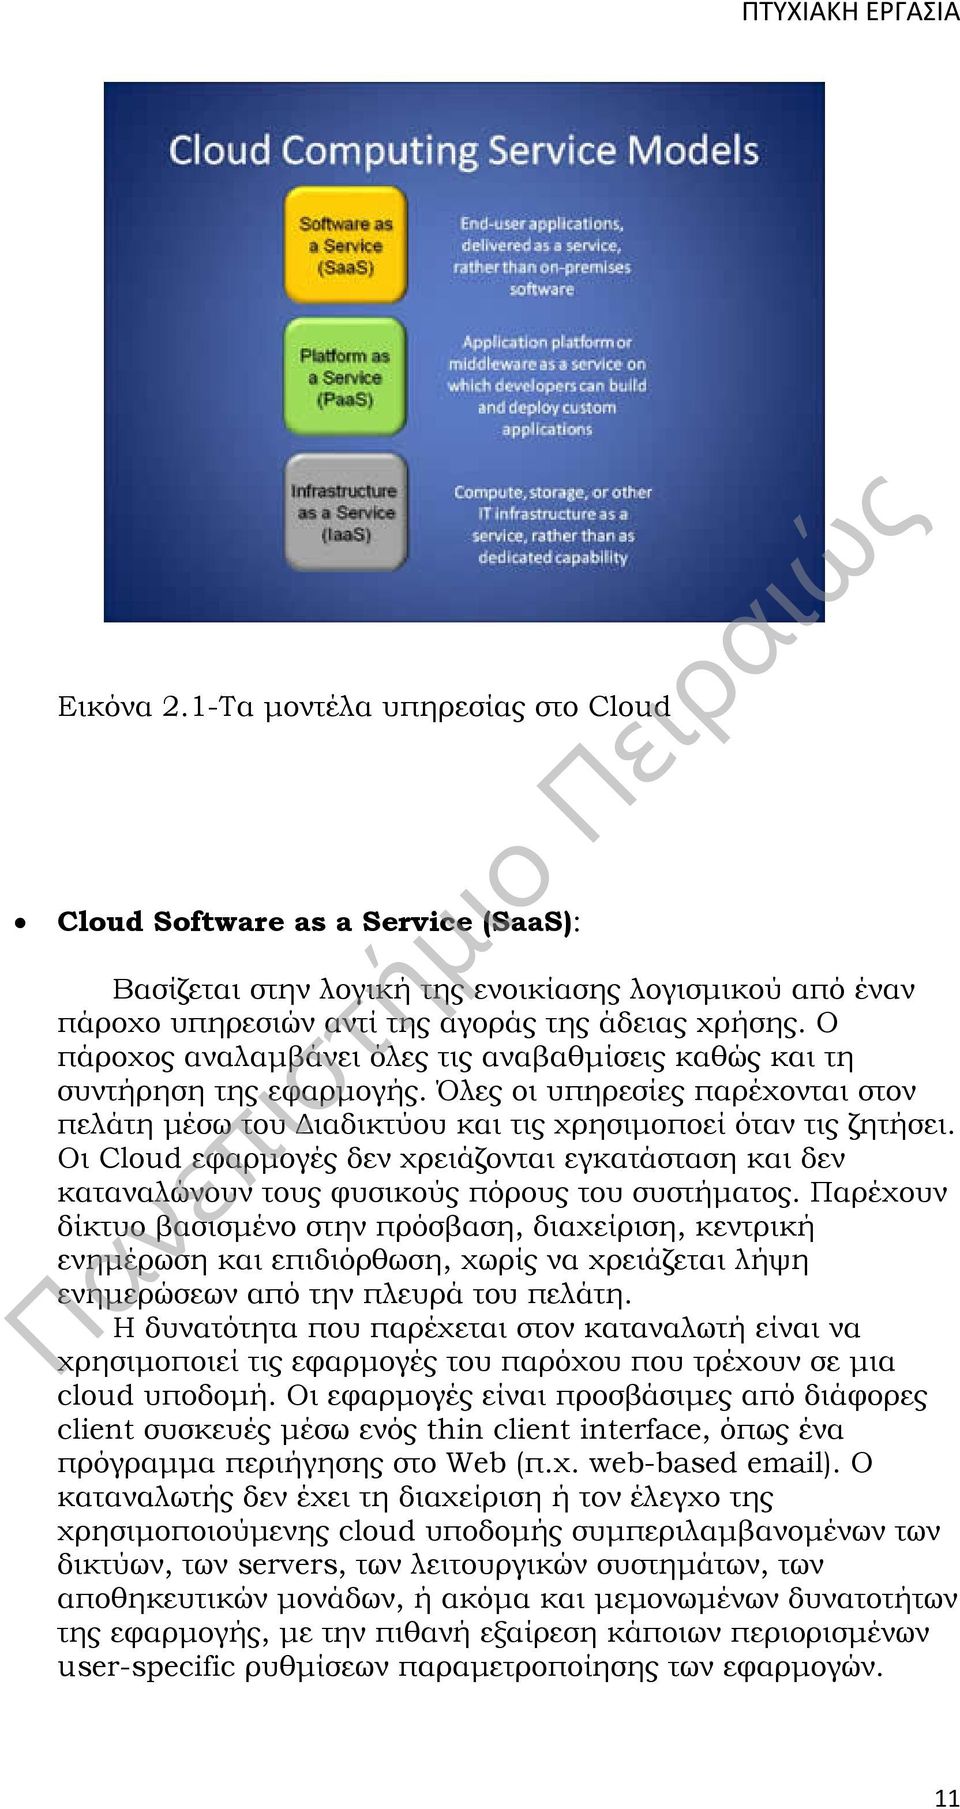 Οι Cloud εφαρμογές δεν χρειάζονται εγκατάσταση και δεν καταναλώνουν τους φυσικούς πόρους του συστήματος.